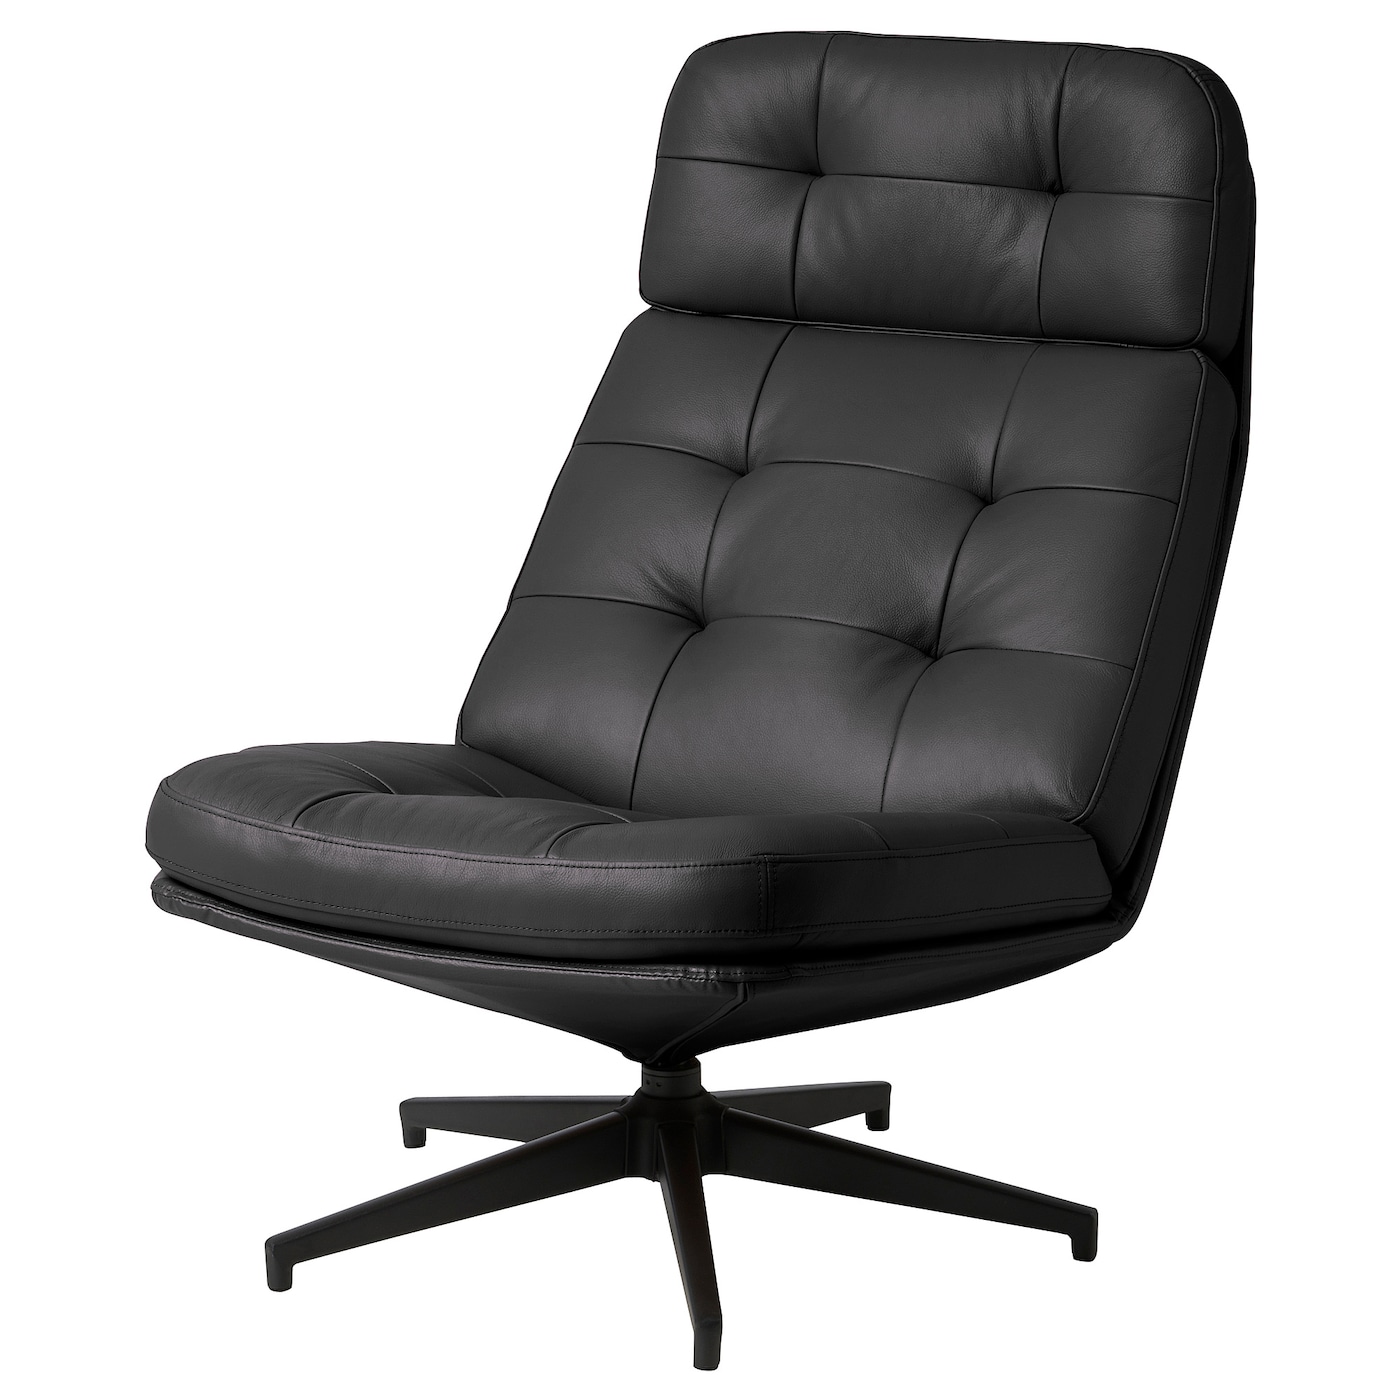 ХАВБЕРГ Вращающееся кресло, Гранн/Бомстад черный HAVBERG IKEA вращающееся кресло раскладное